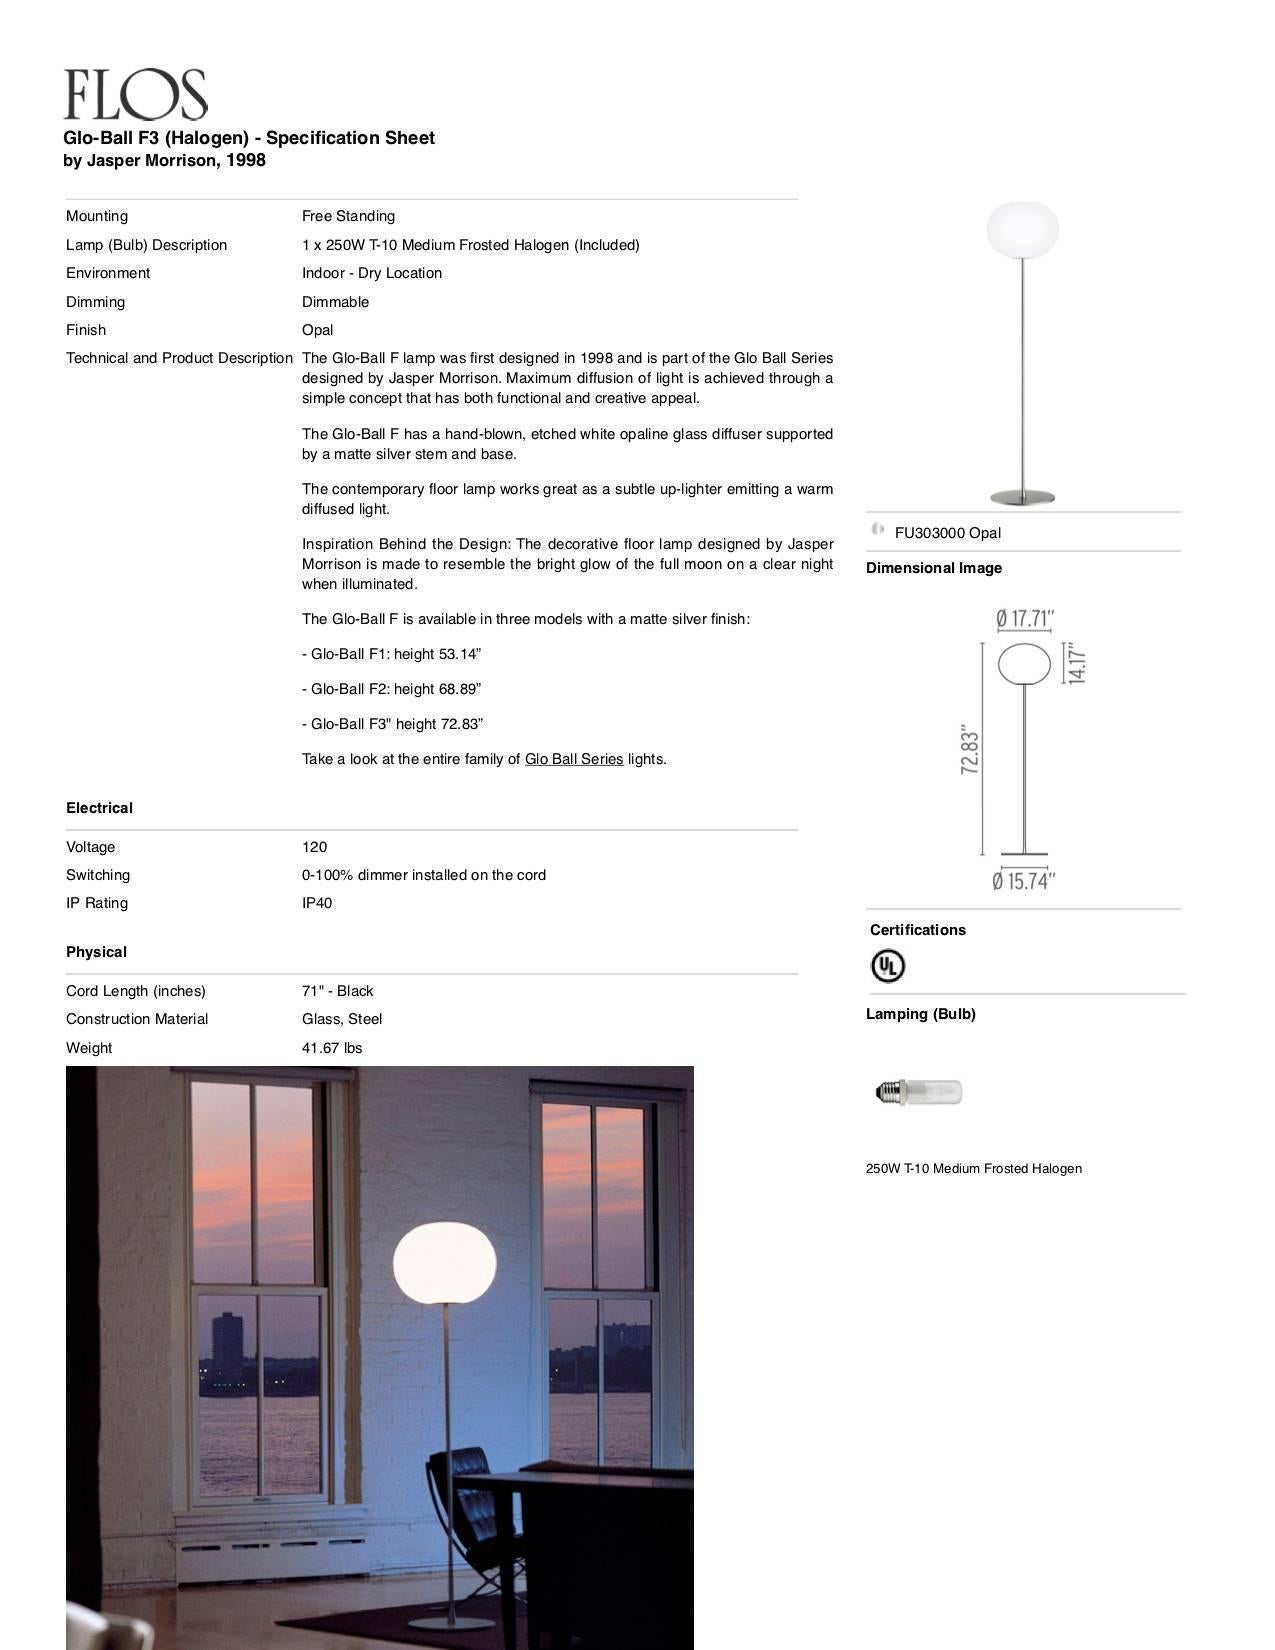 Italian Jasper Morrison Modern Sphere Glass Stainless Steel F3 Floor Lamp for FLOS For Sale